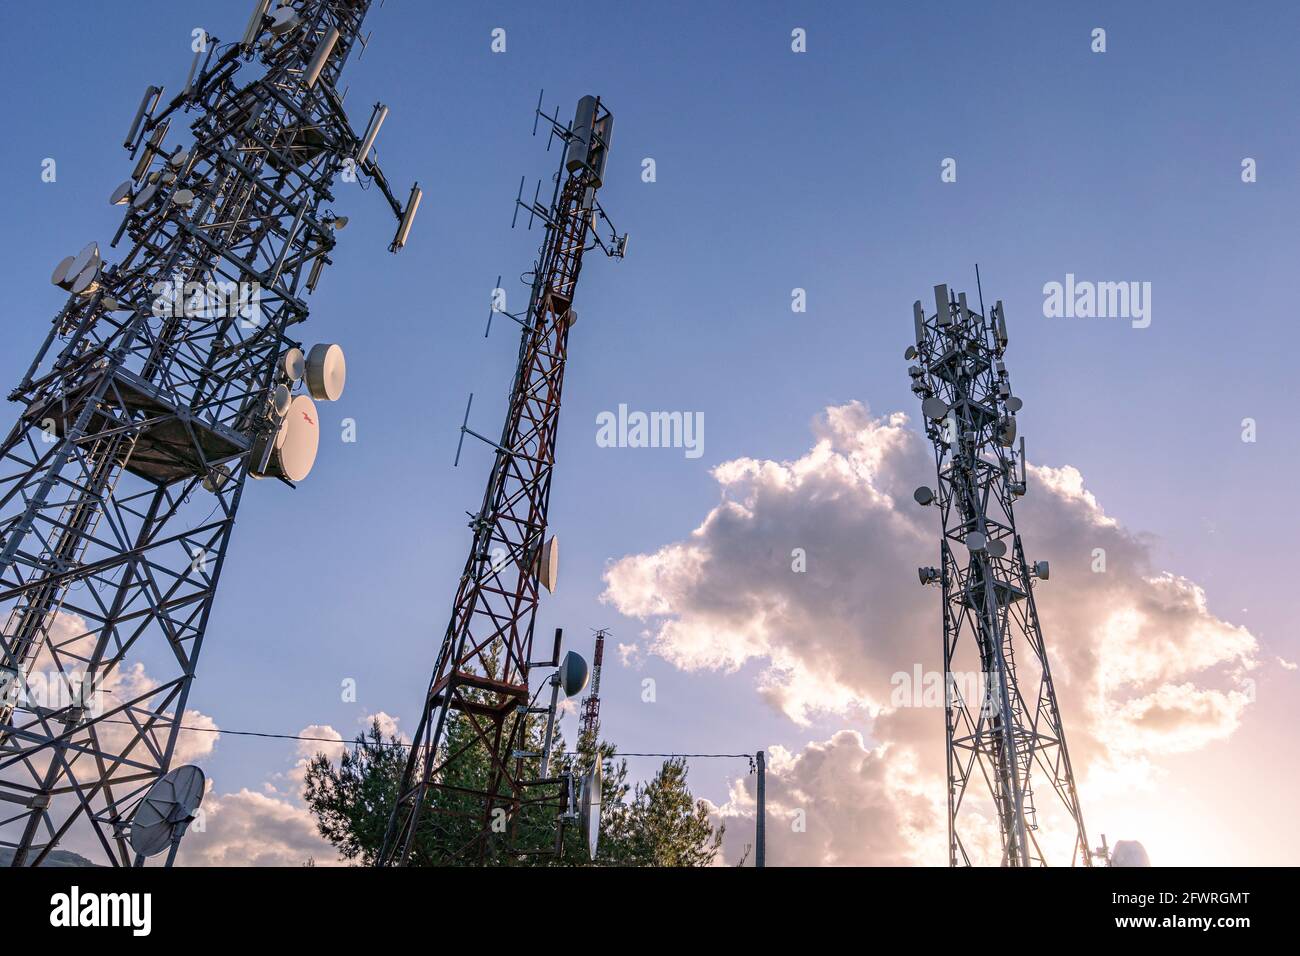 Tres antenas de comunicación por satélite, celular o televisión se destacan en el cielo con una nube iluminada por el sol que se pone. Abruzzo, Italia, Europ Foto de stock